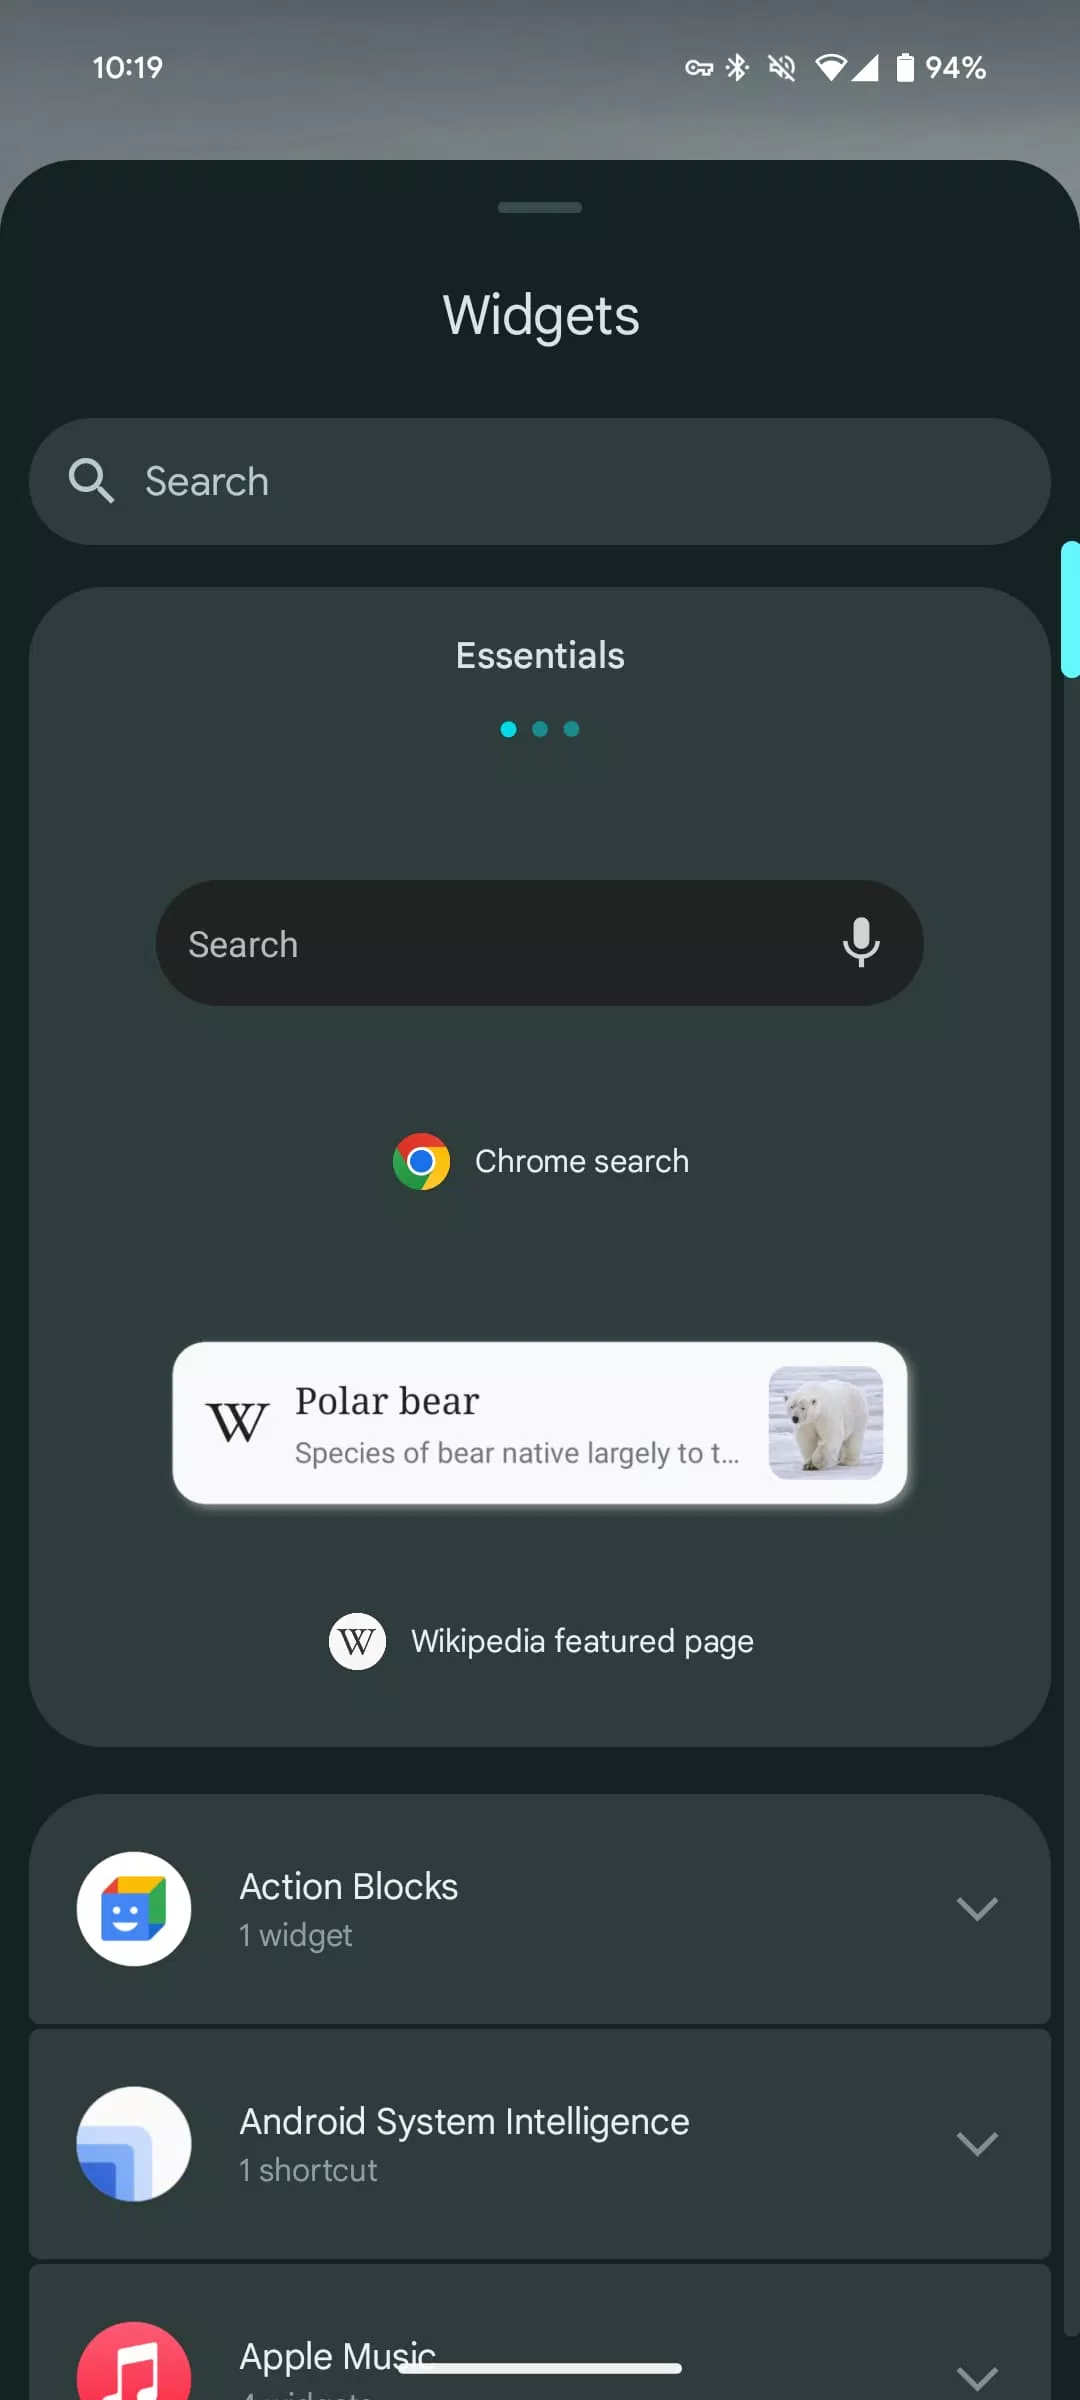 phiên bản Beta 2 của Android 15, Google đã cập nhật bảng Widgets với một phần mới, nơi người dùng có thể tìm thấy các widgets được đề xuất bởi hệ thống (Ảnh: Internet)